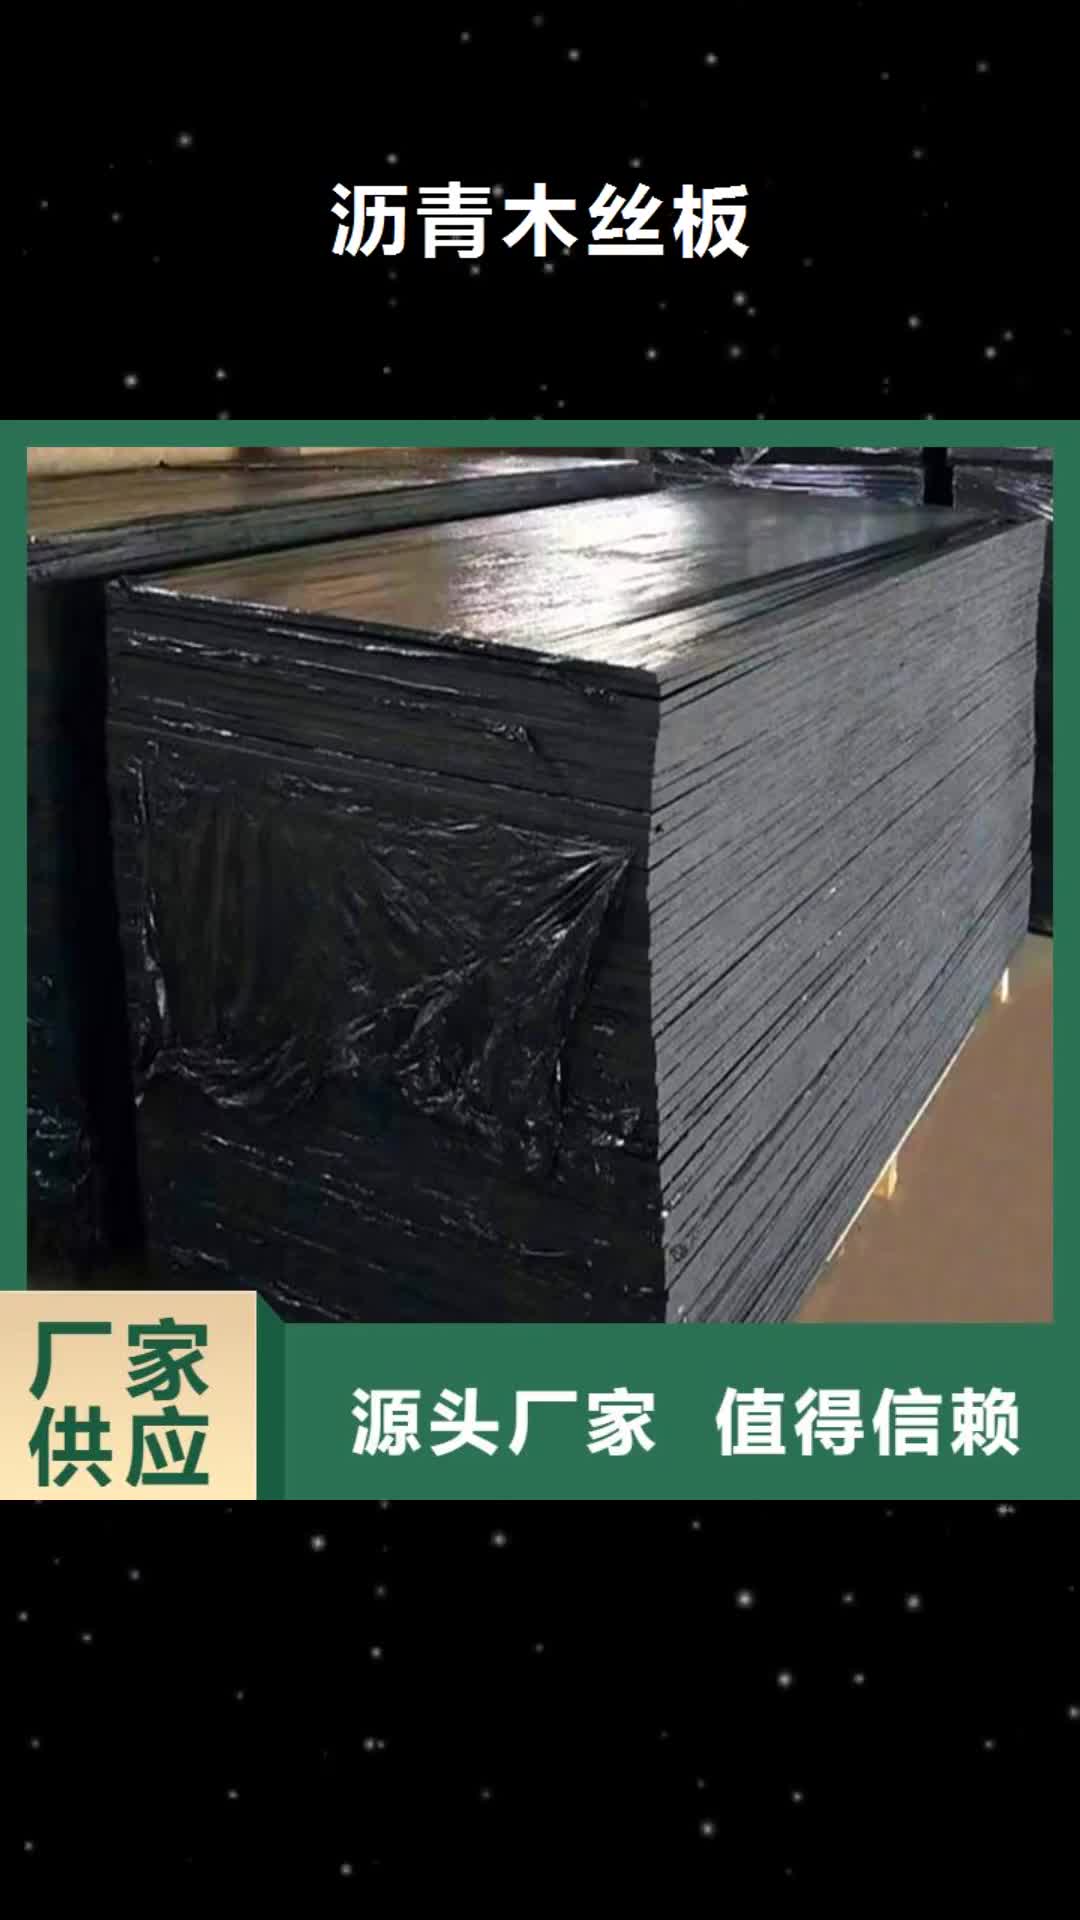 山东 沥青木丝板-【聚乙烯醇纤维】专业供货品质管控